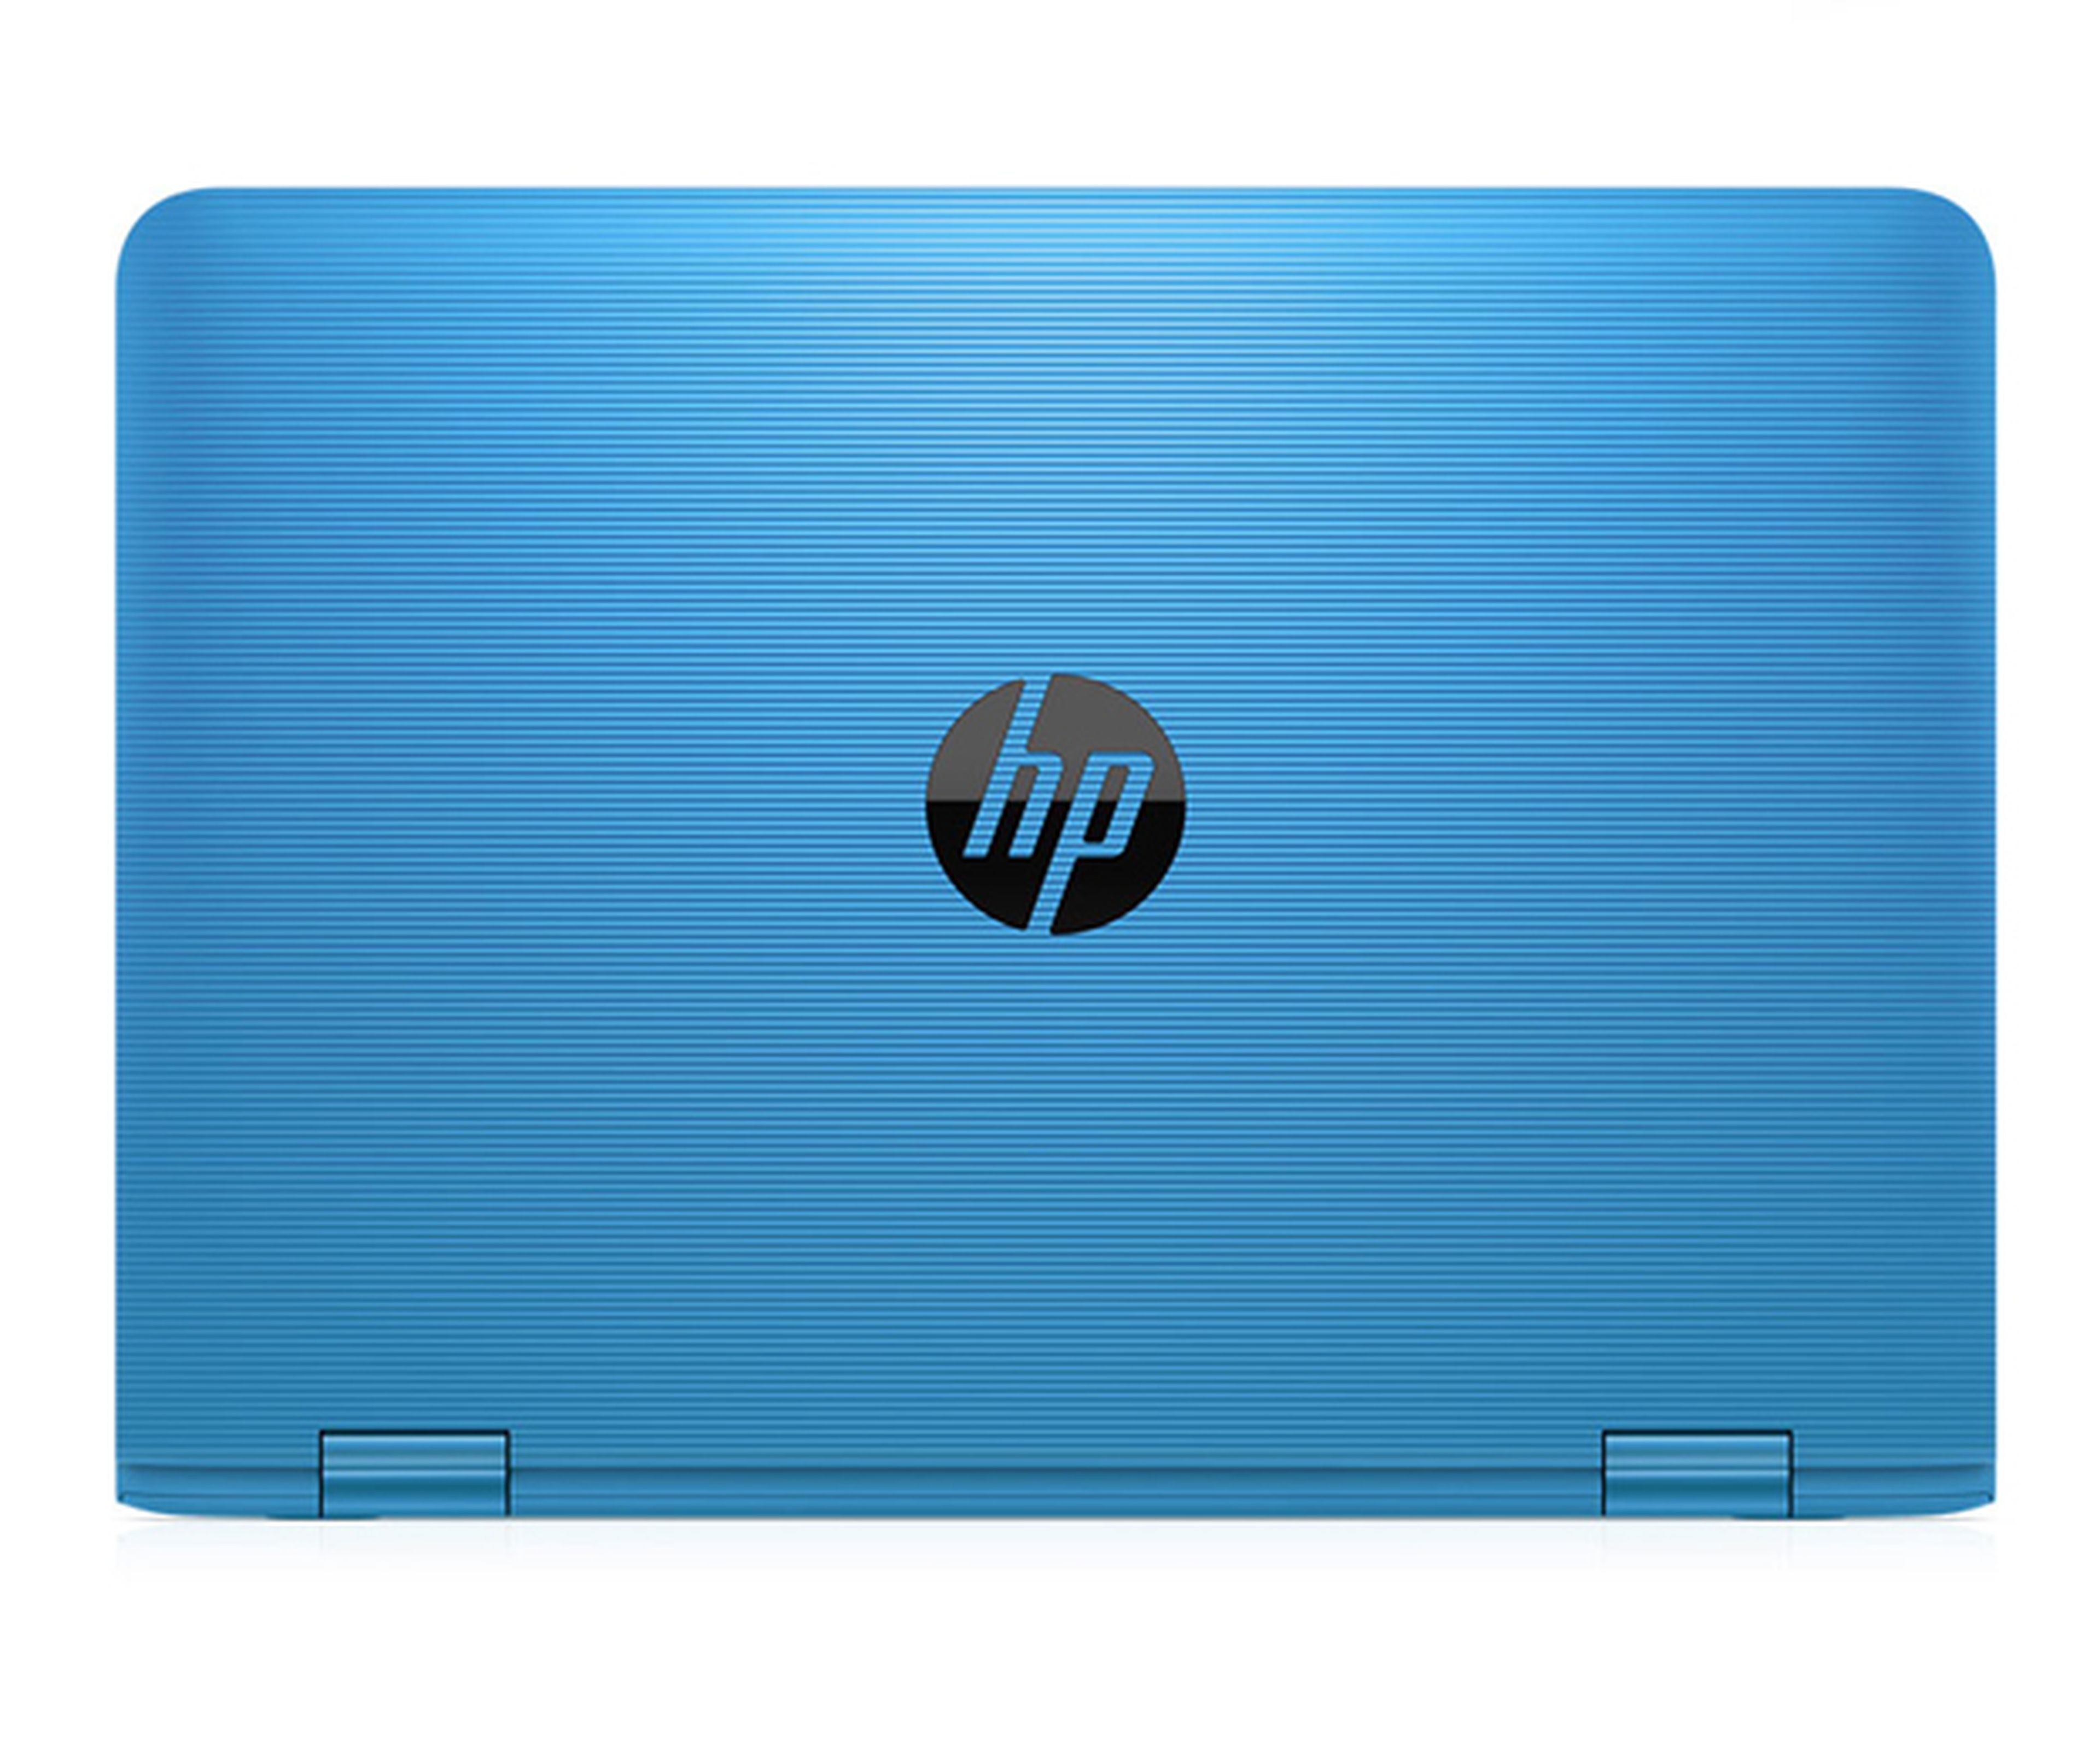 Nuevos portátiles HP Stream: más potencia al mismo precio